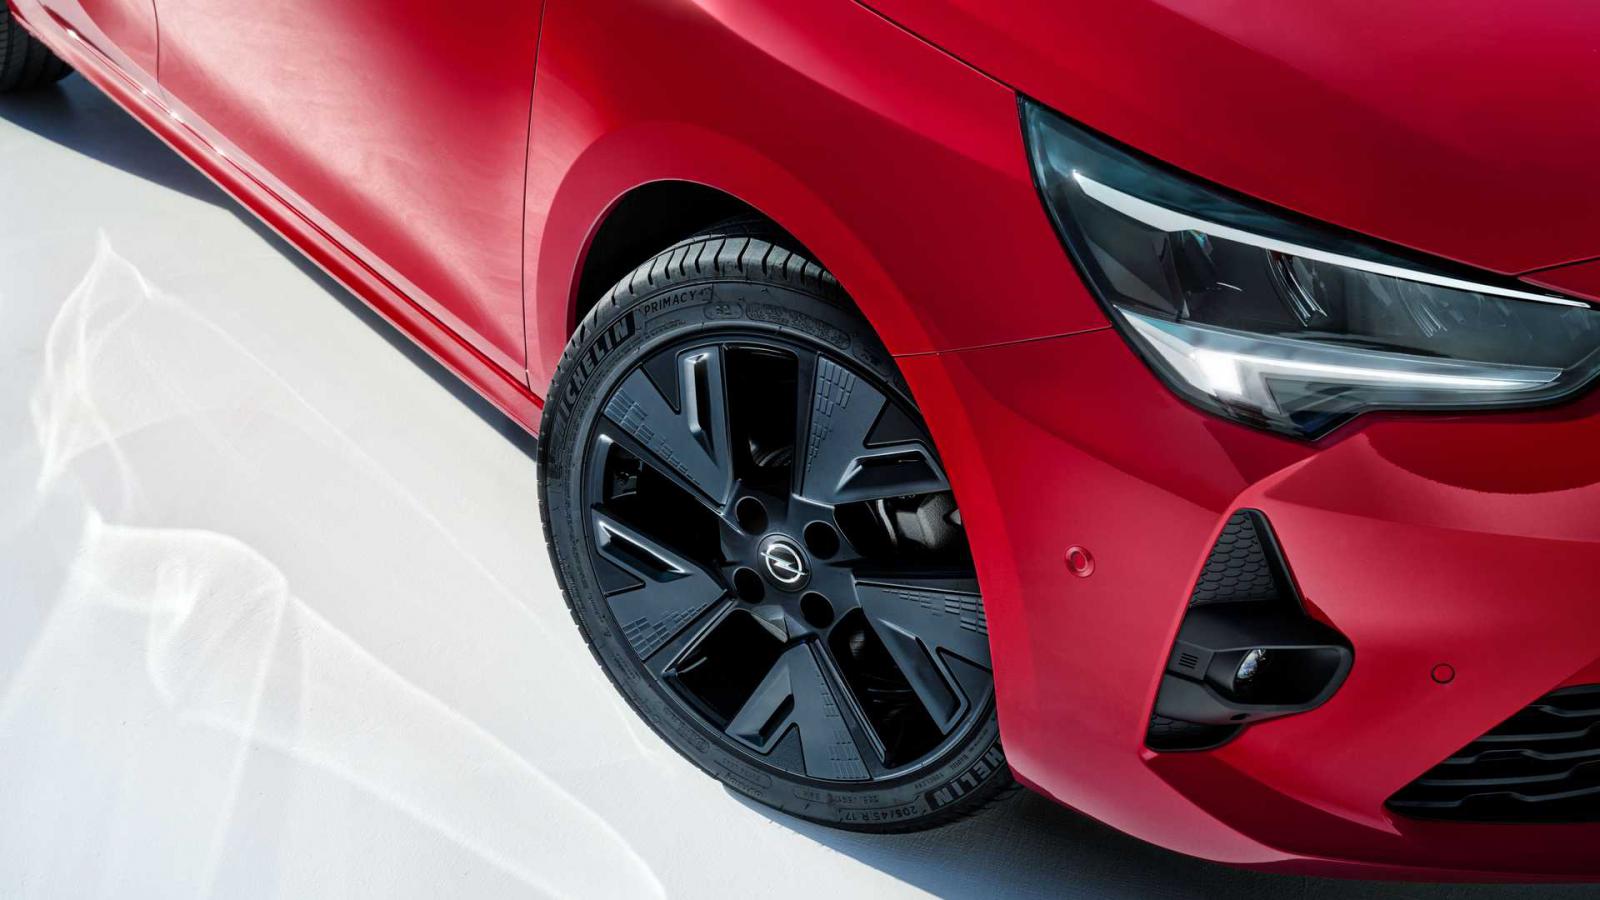 Η Opel γιορτάζει τα 40 χρόνια του Corsa